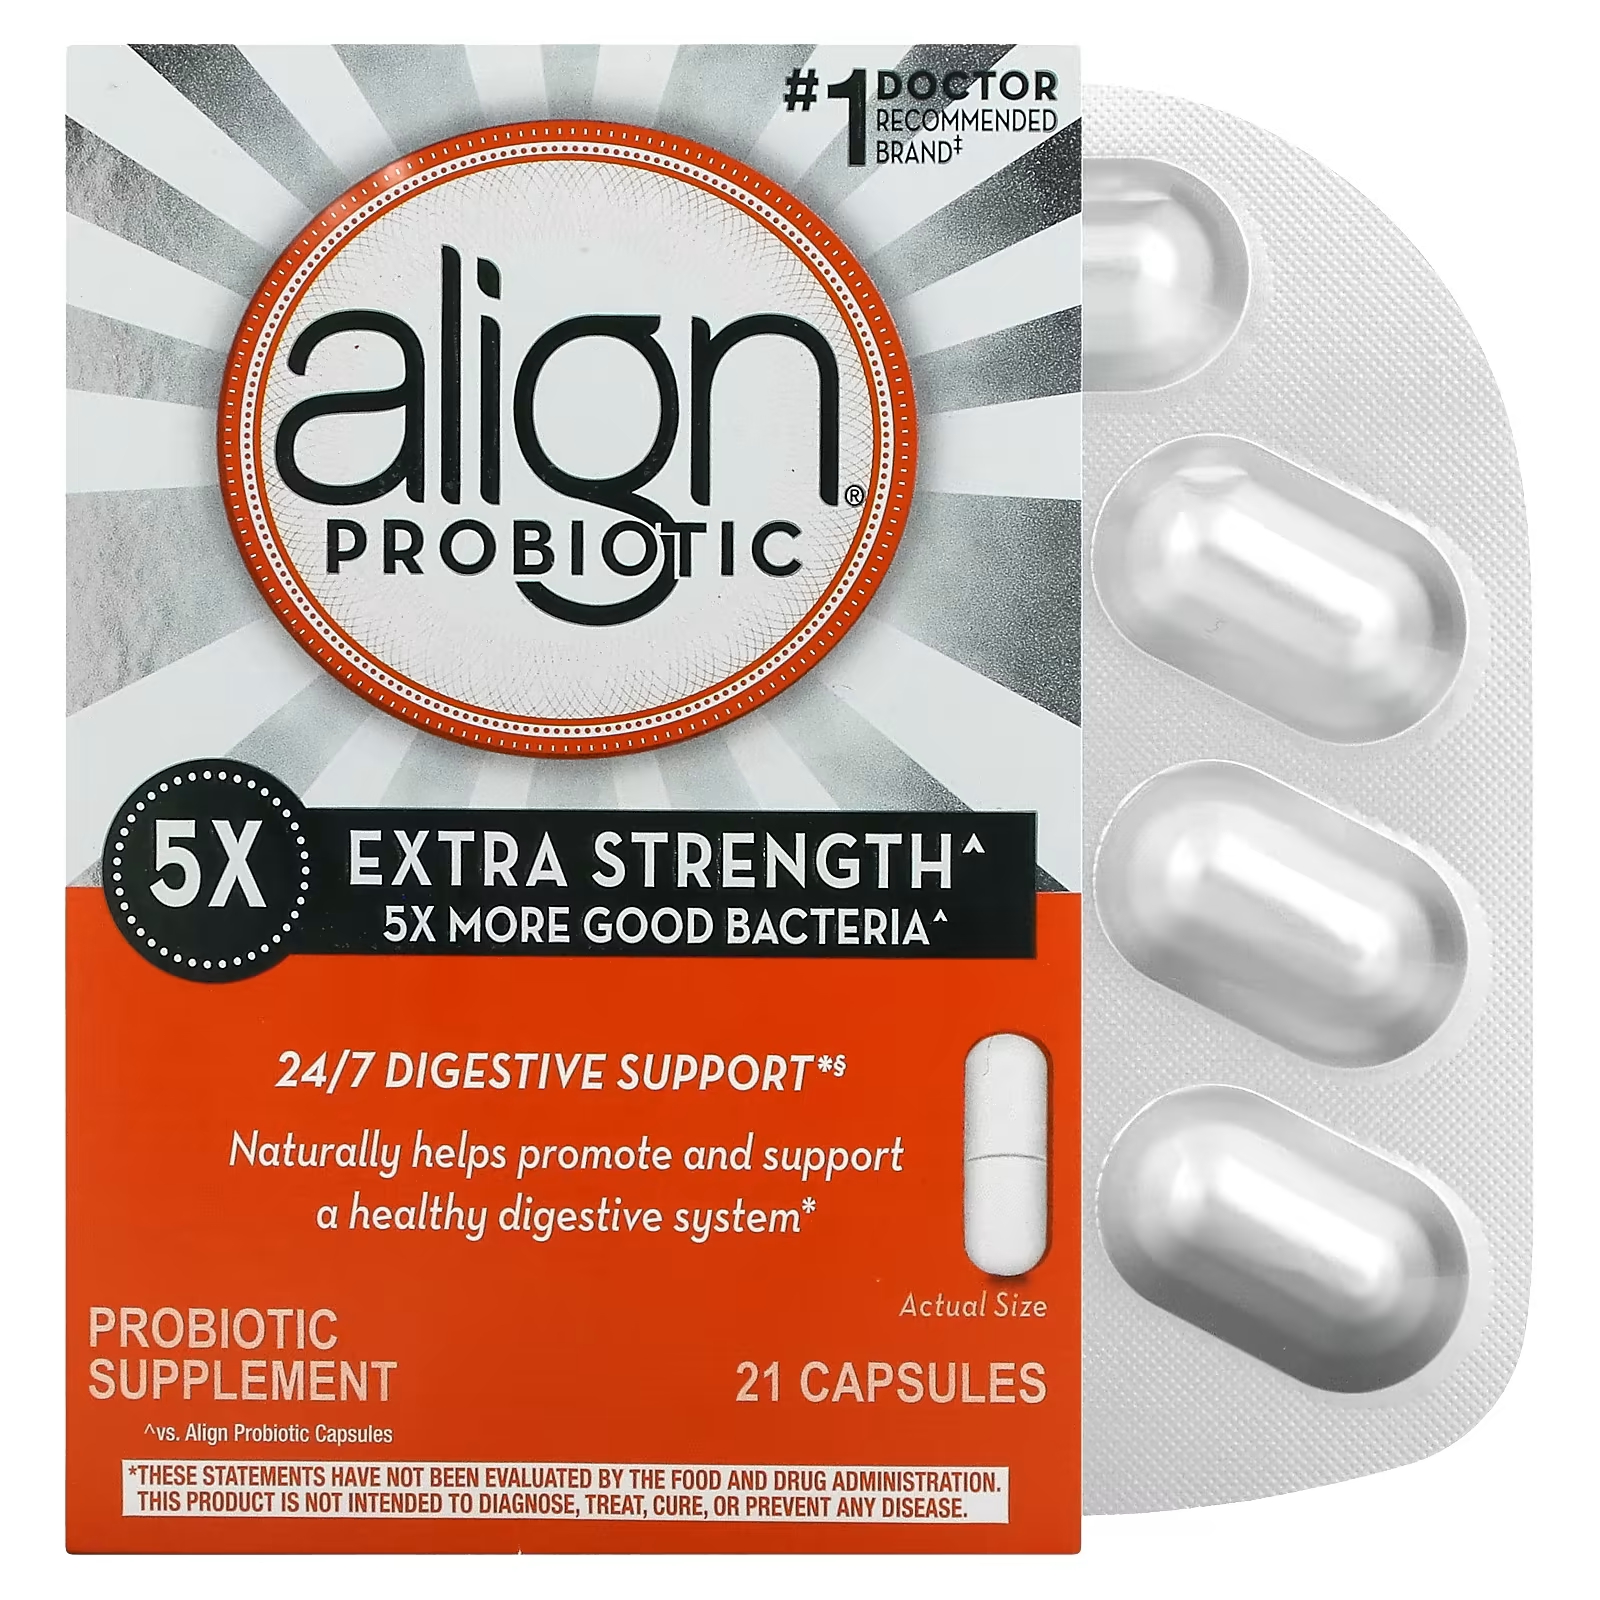 Align Probiotics 24/7 Поддержка пищеварения Пробиотическая добавка повышенной силы 21 капсула align probiotics поддержка пищеварения 24 7 добавка с пробиотиками с повышенной силой действия 21 капсула